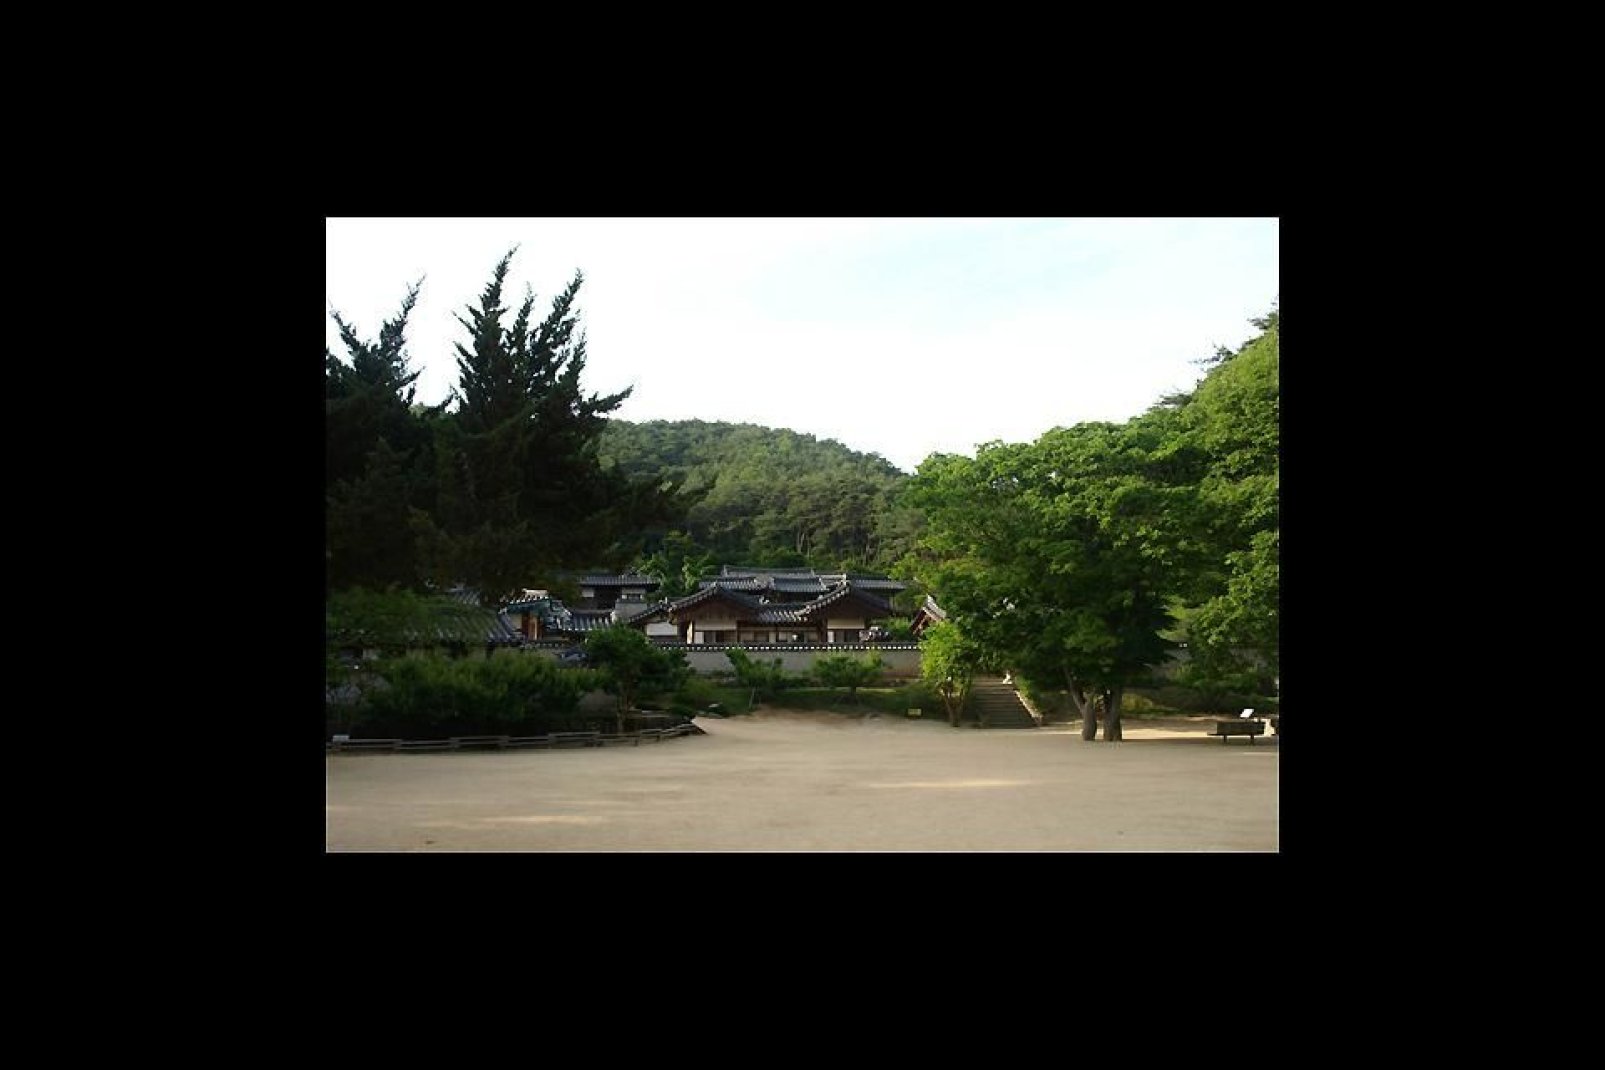 Dosan Seowon in den umliegenden Hgeln ist eine der letzten konfuzianischen Schulen des Landes. Ein zauberhafter Ort.